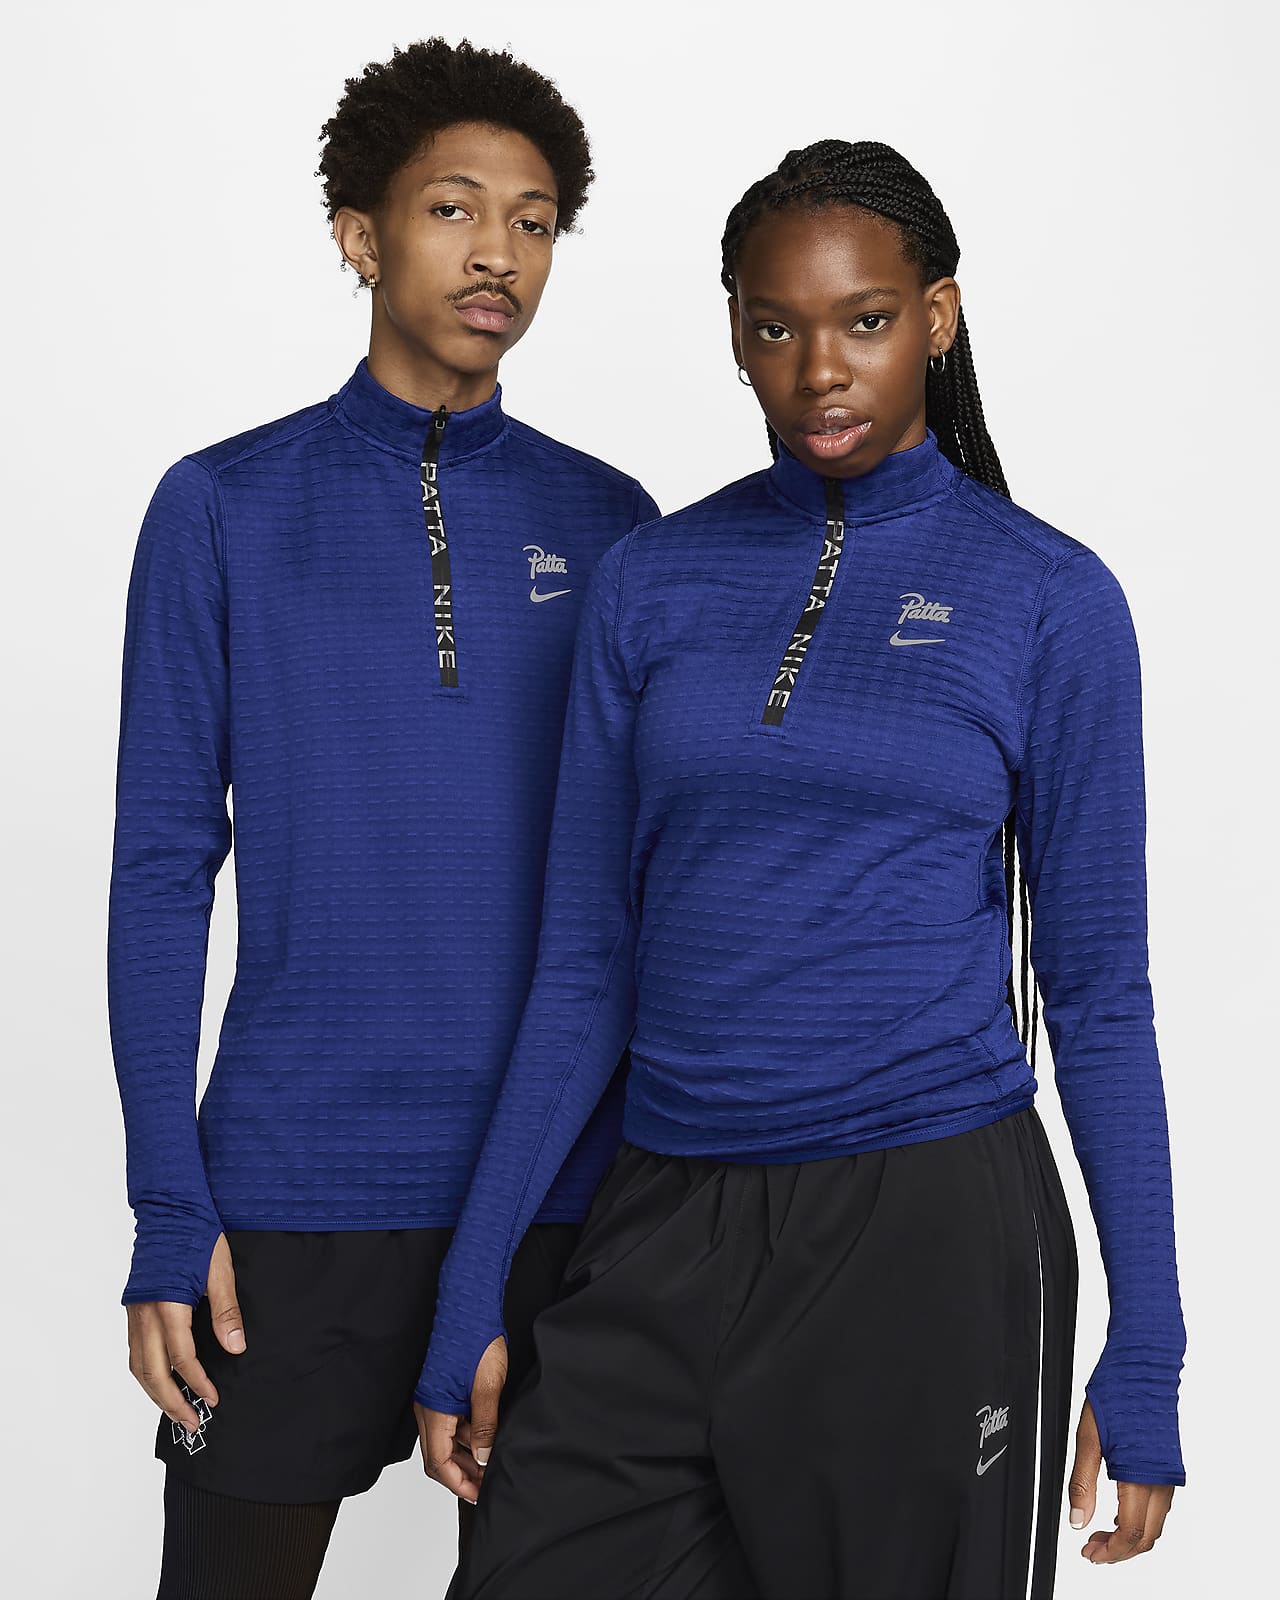 Μακρυμάνικη μπλούζα με φερμουάρ στο 1/2 του μήκους Nike x Patta Running Team